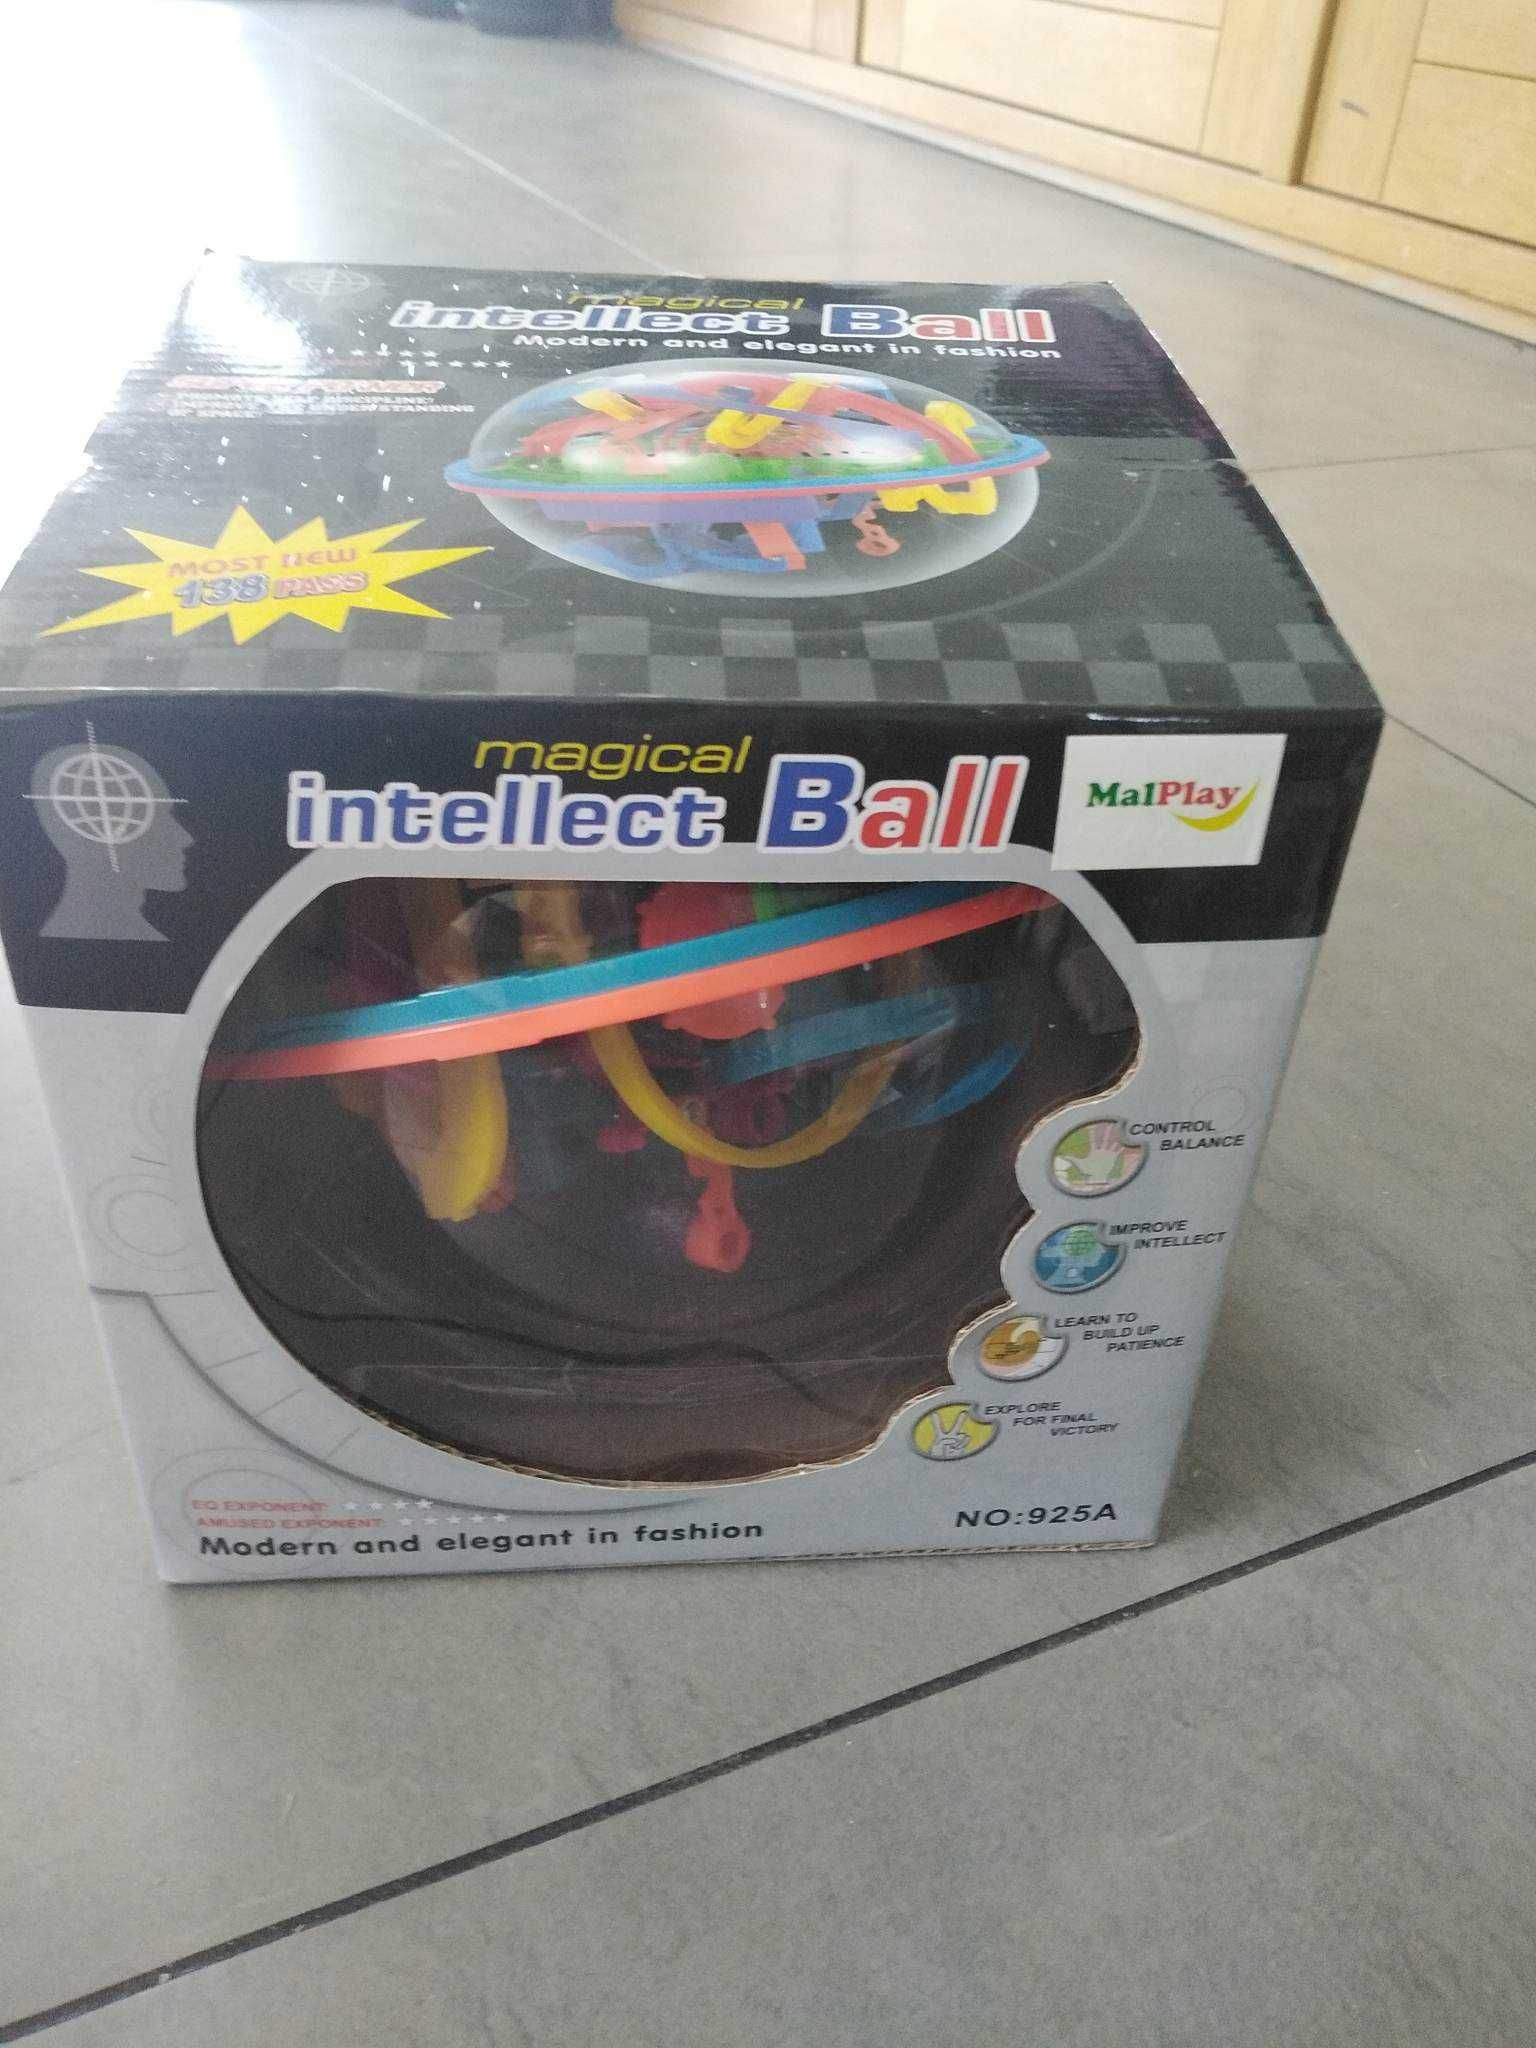 piłeczka zręcznościowa - intellect ball